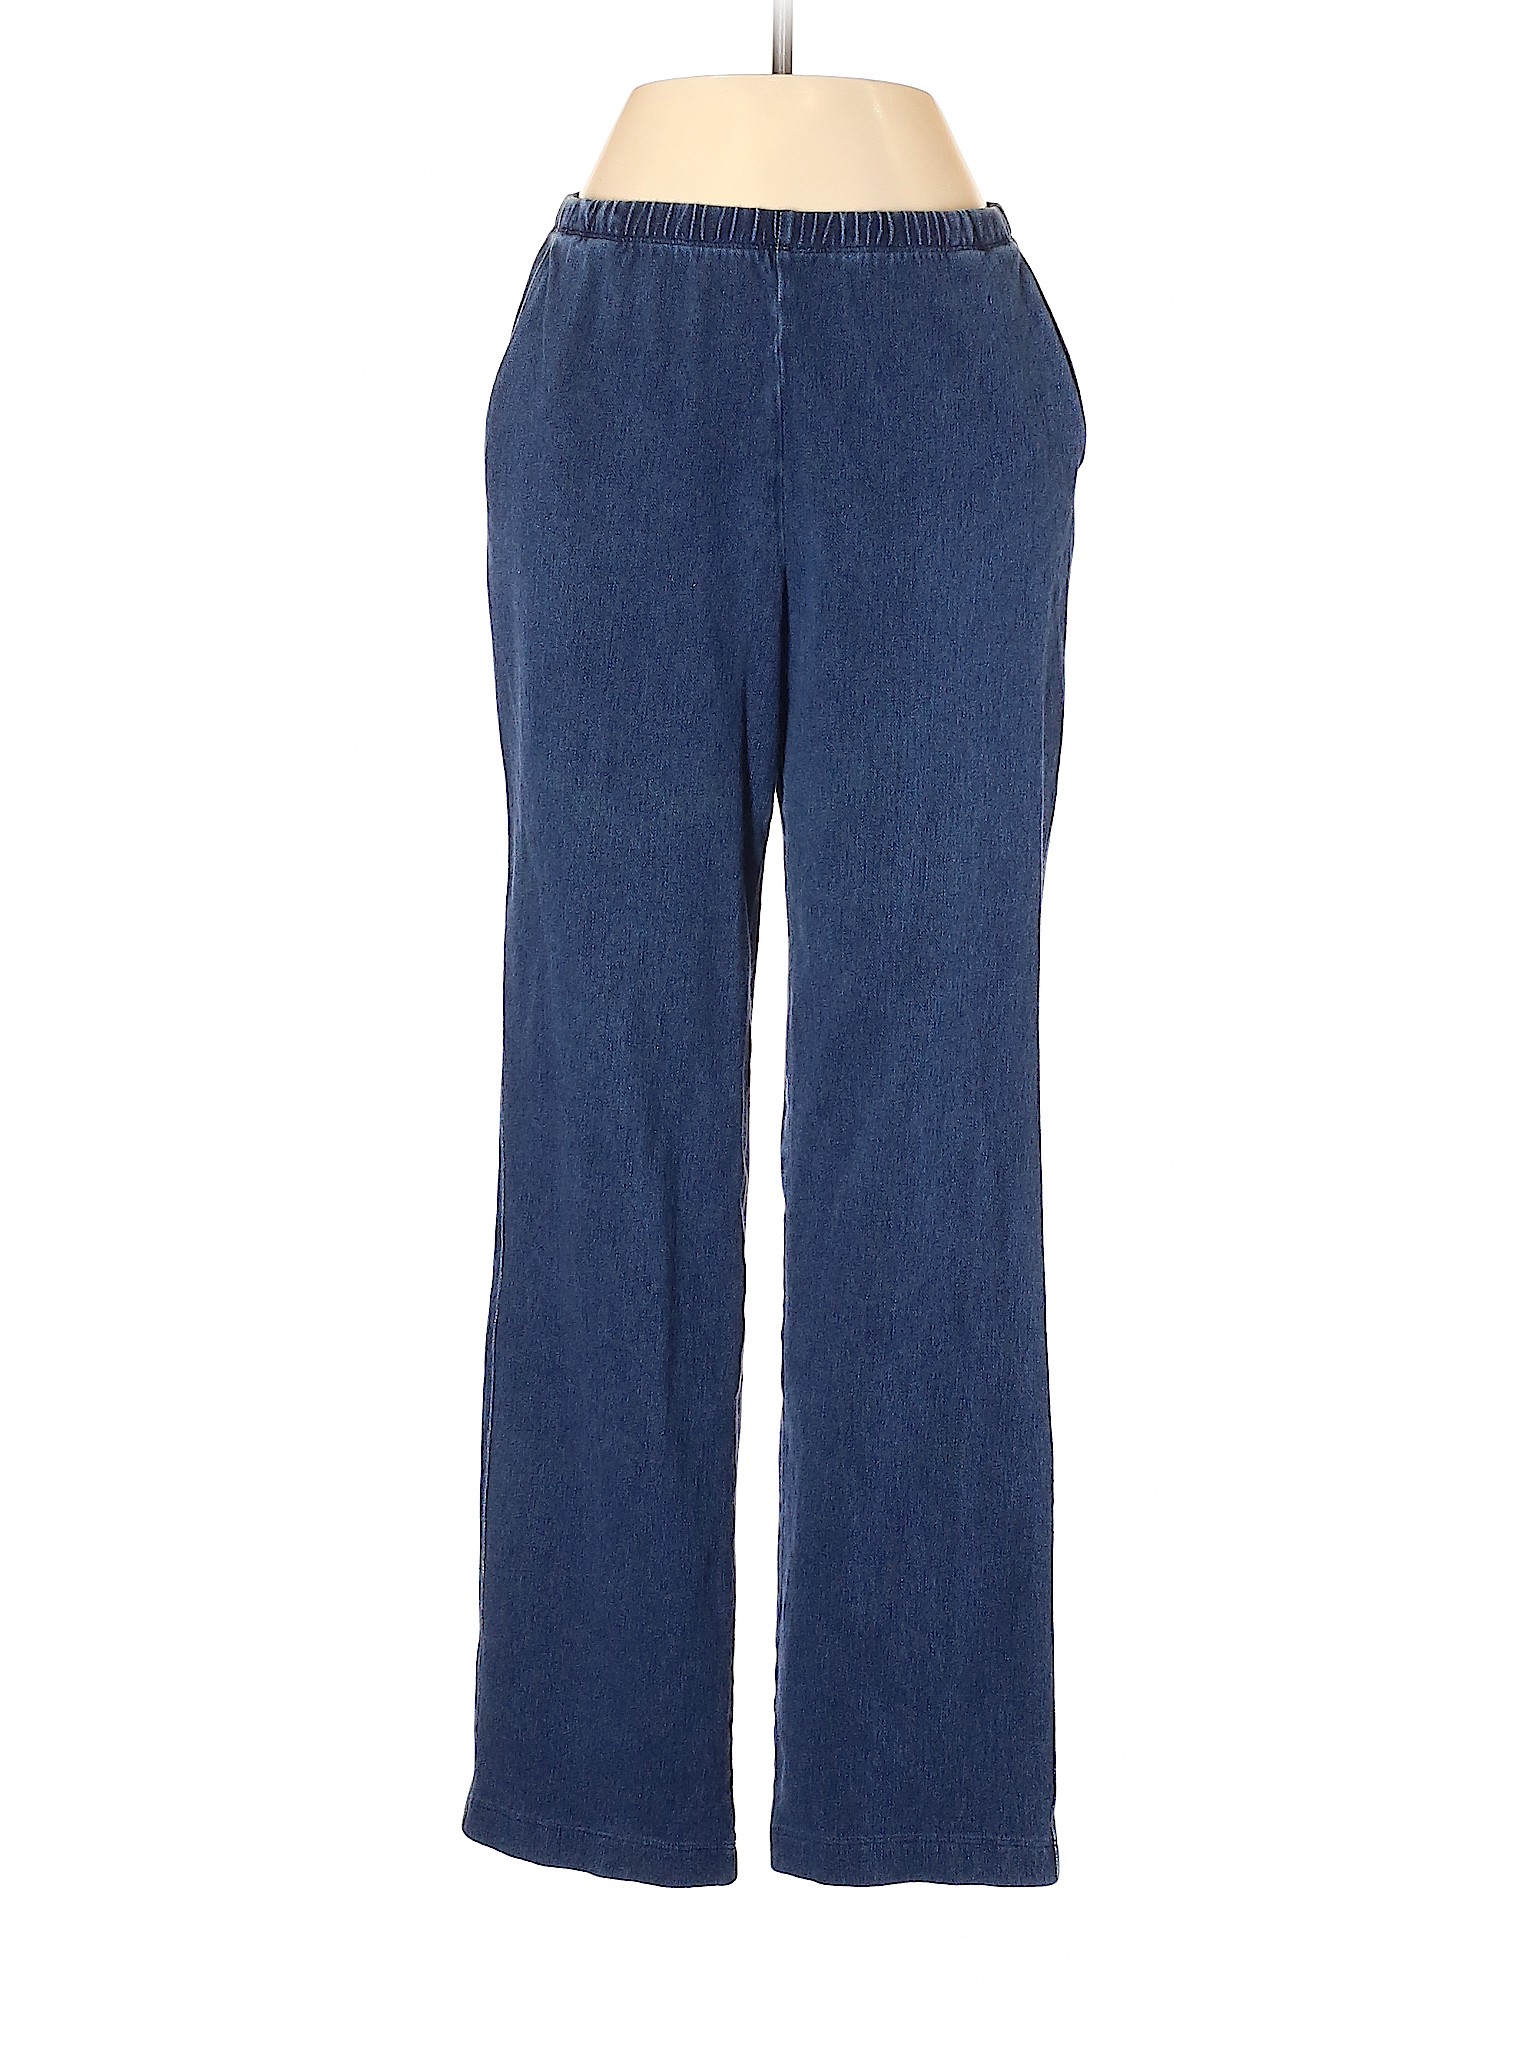 Lands' End Women Blue Jeans XS | eBay